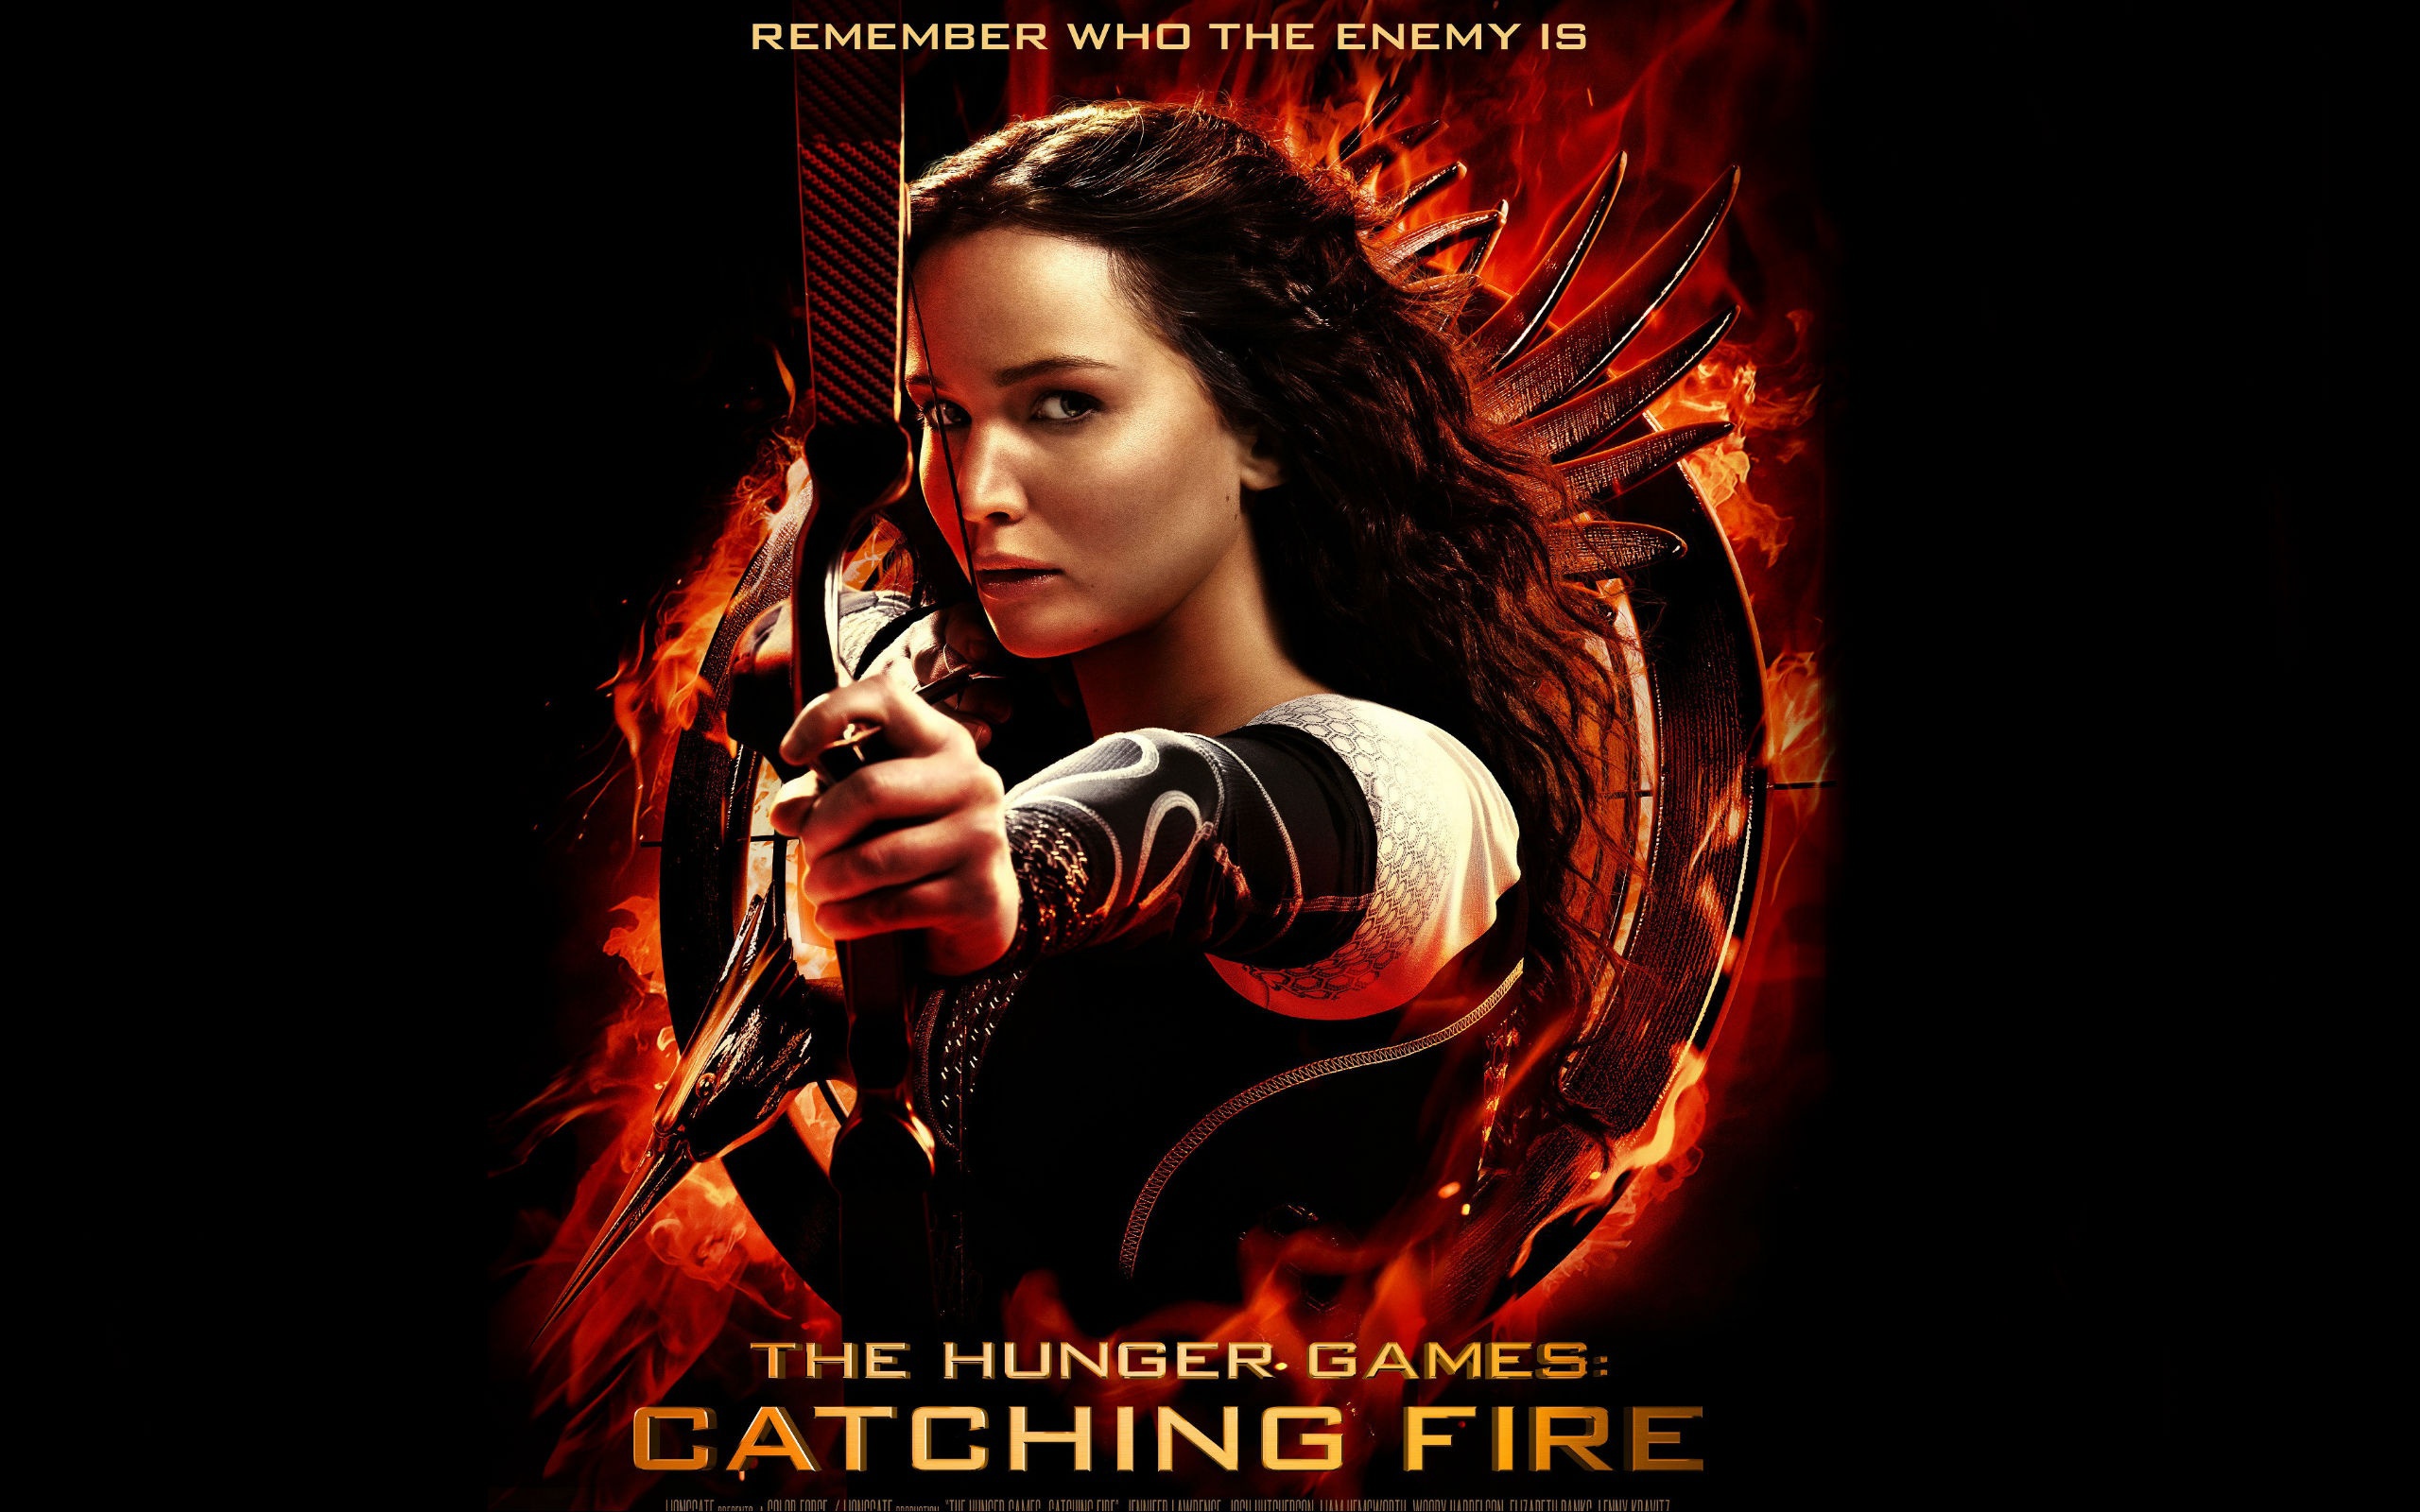 Catching Fire Katniss Everdeen Wallpaper And Image